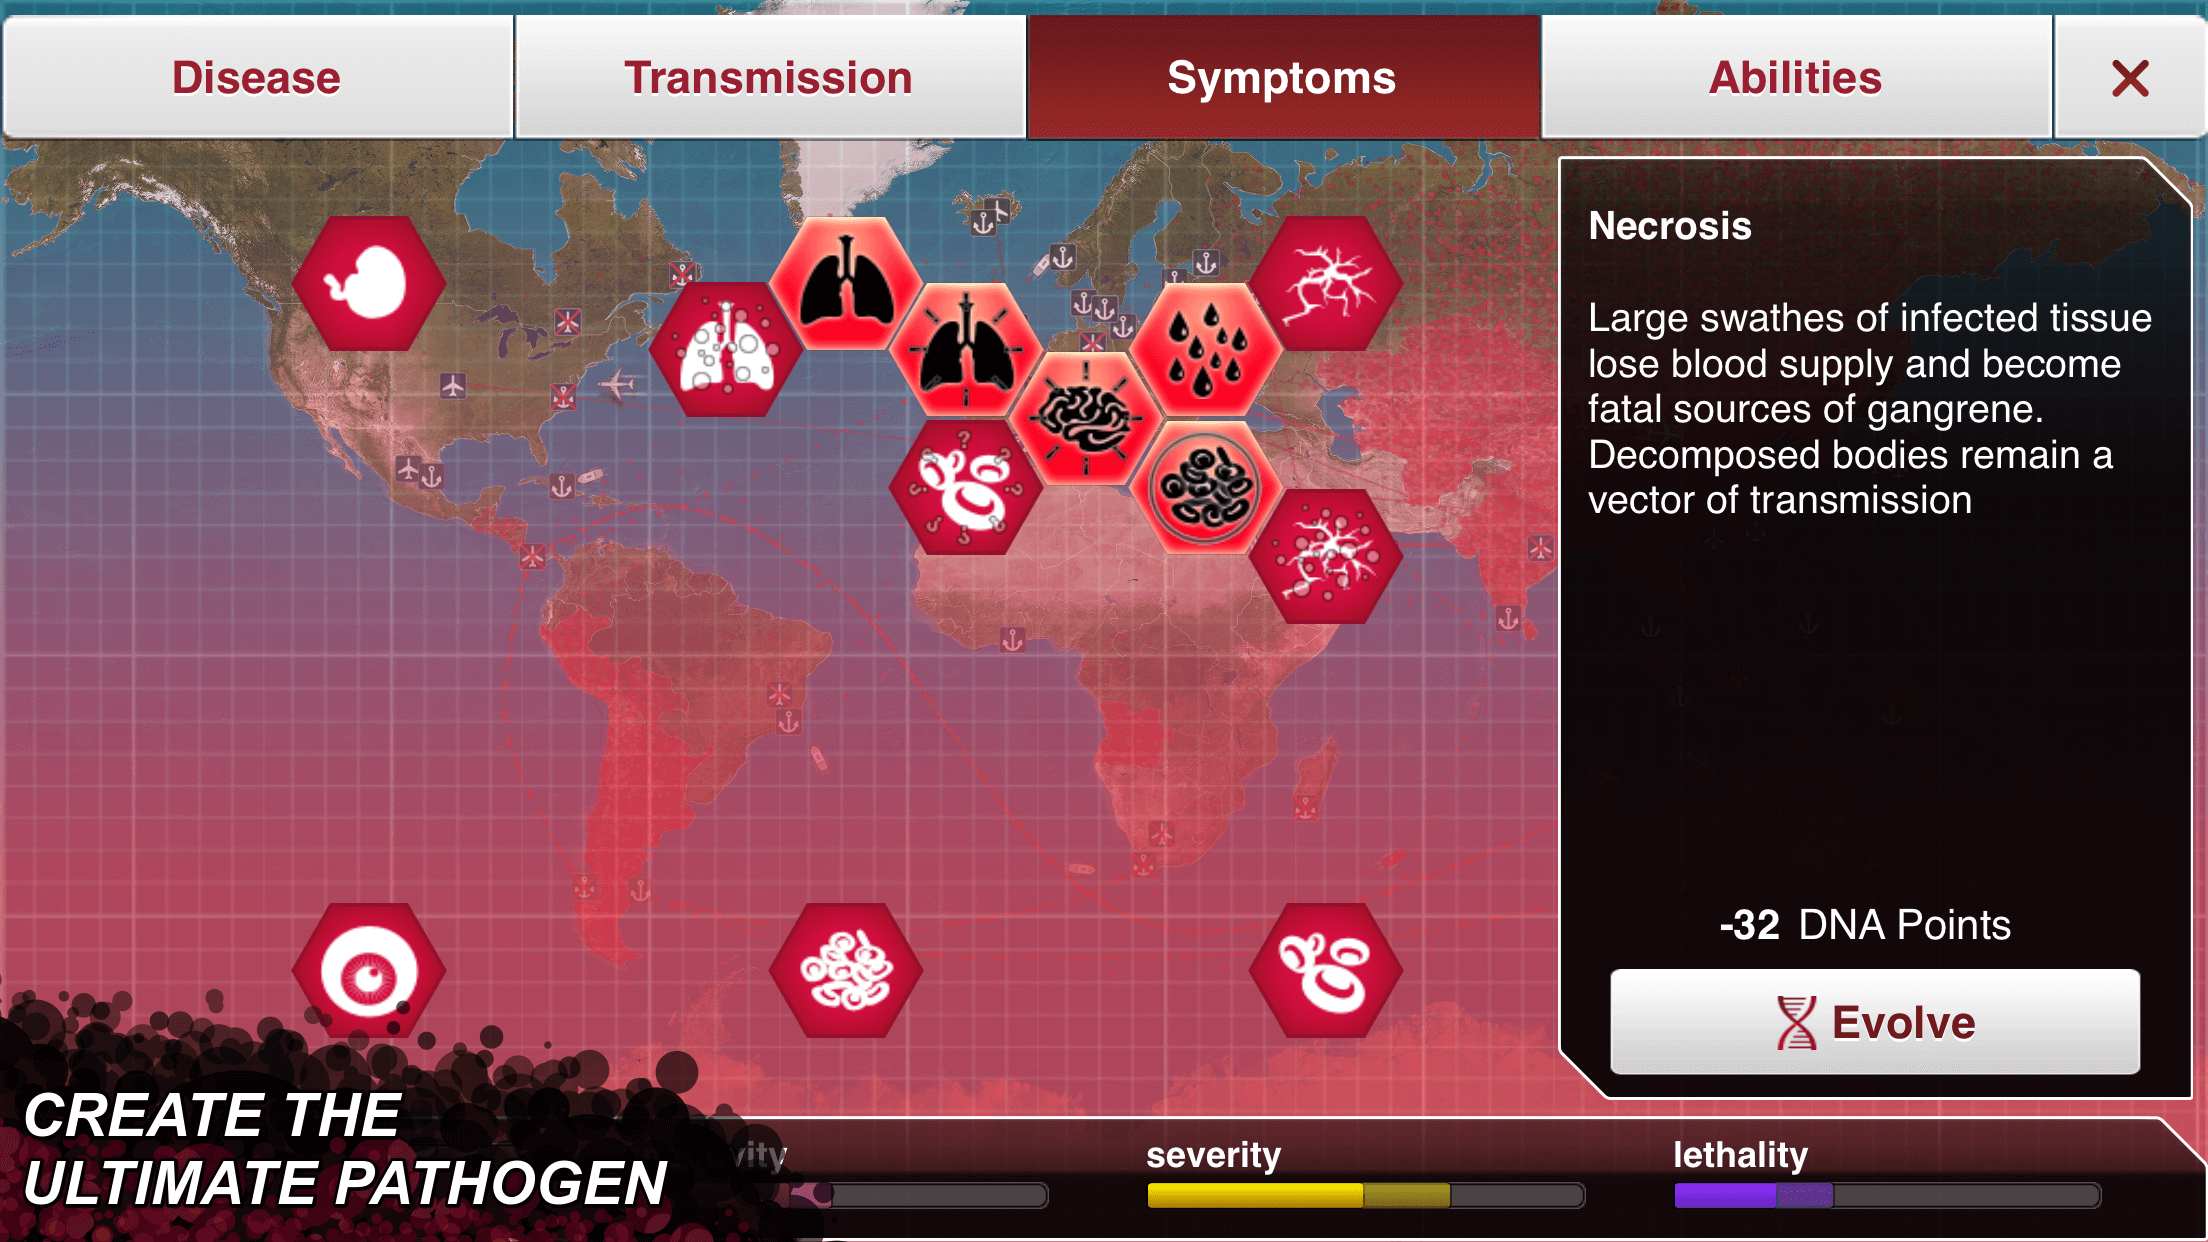 Captura de tela do Plague Inc